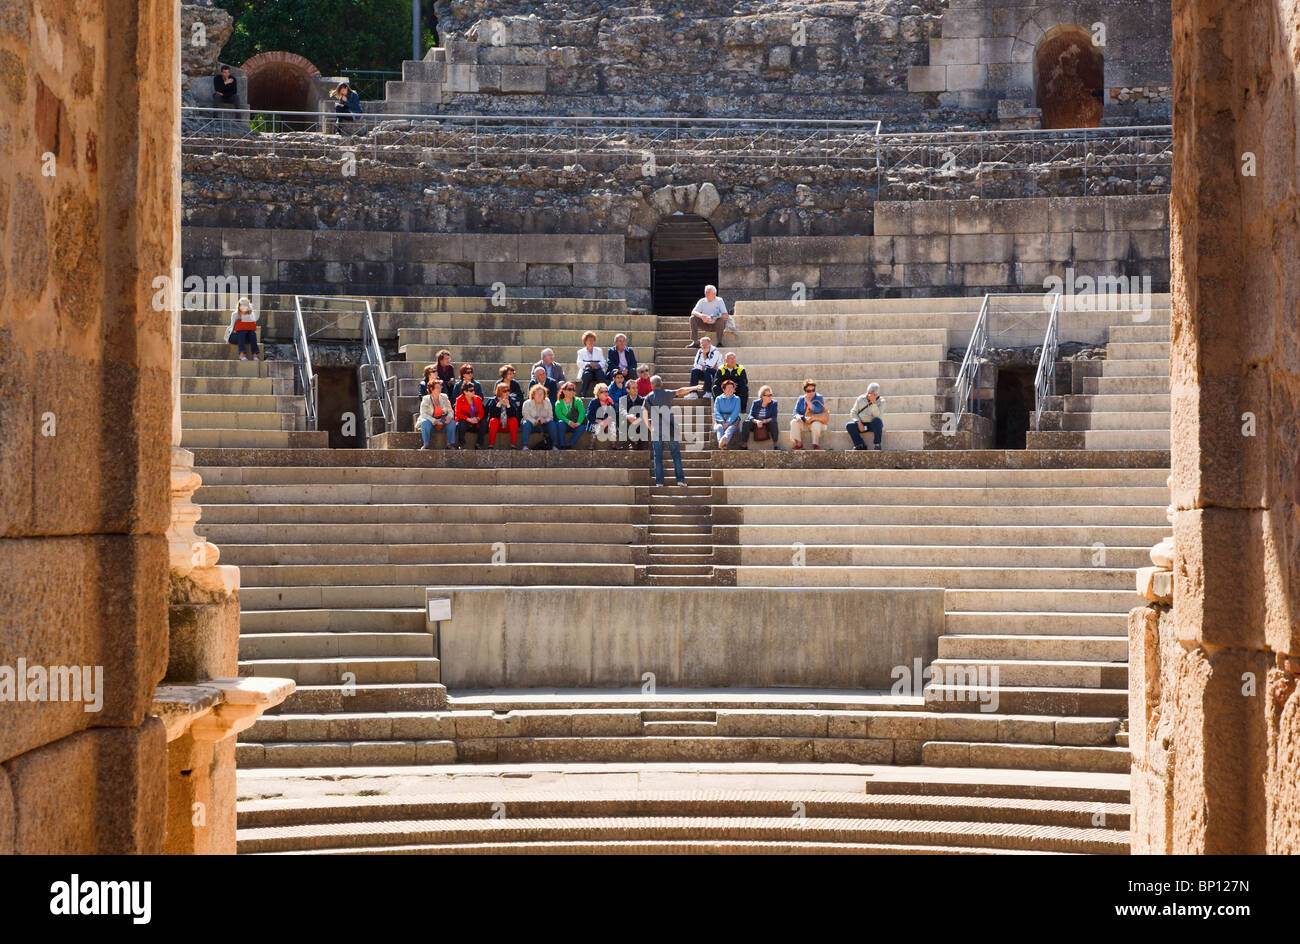 Merida, provincia di Badajoz, Spagna. Il teatro romano costruito nel I secolo A.C. Turisti che si godono una visita guidata e lezione. Foto Stock